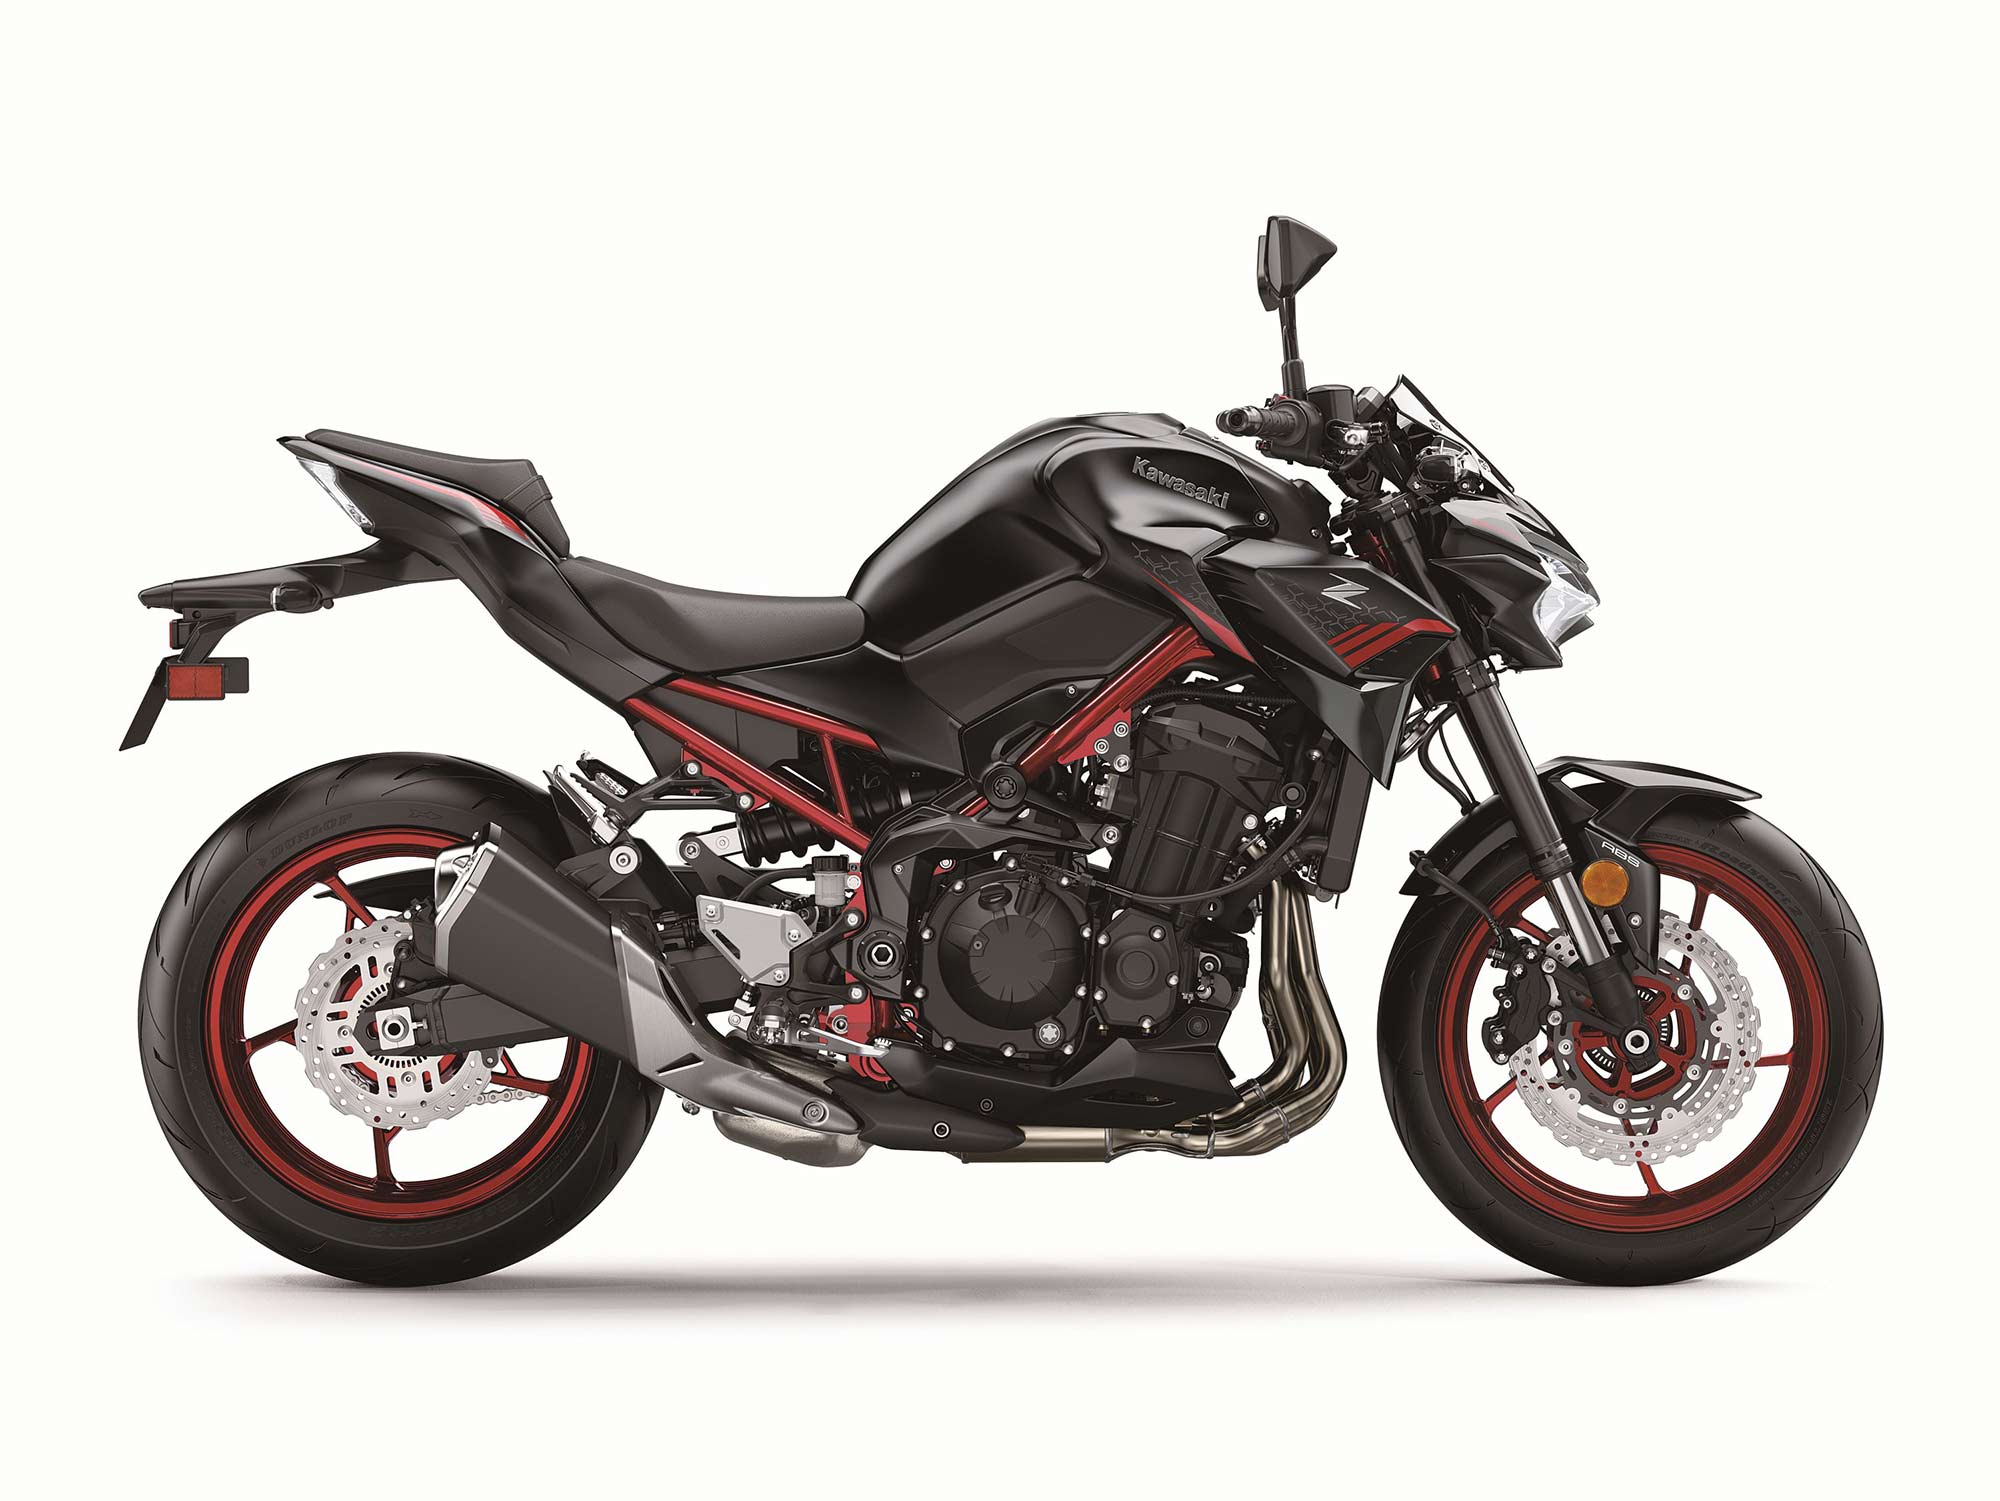 2020 Kawasaki Z900 ABS Review - Cycle News